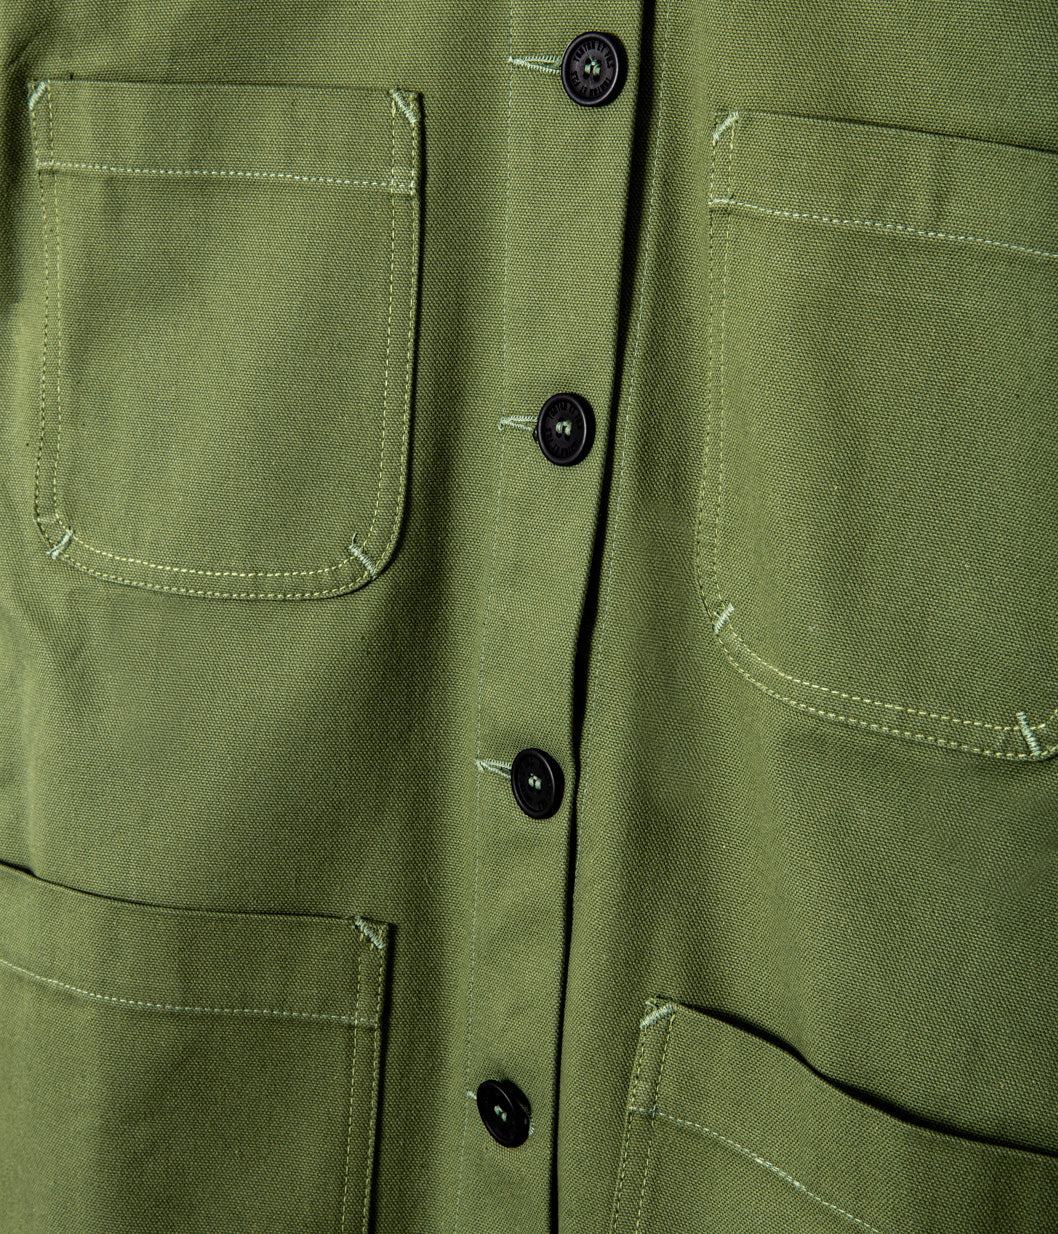 Tonton et Fils - La veste femme "L'Ouvrière" de l'Ouvrière Moderne - Canvas vert - Fabriquée en France - Vue sur la boutonnière